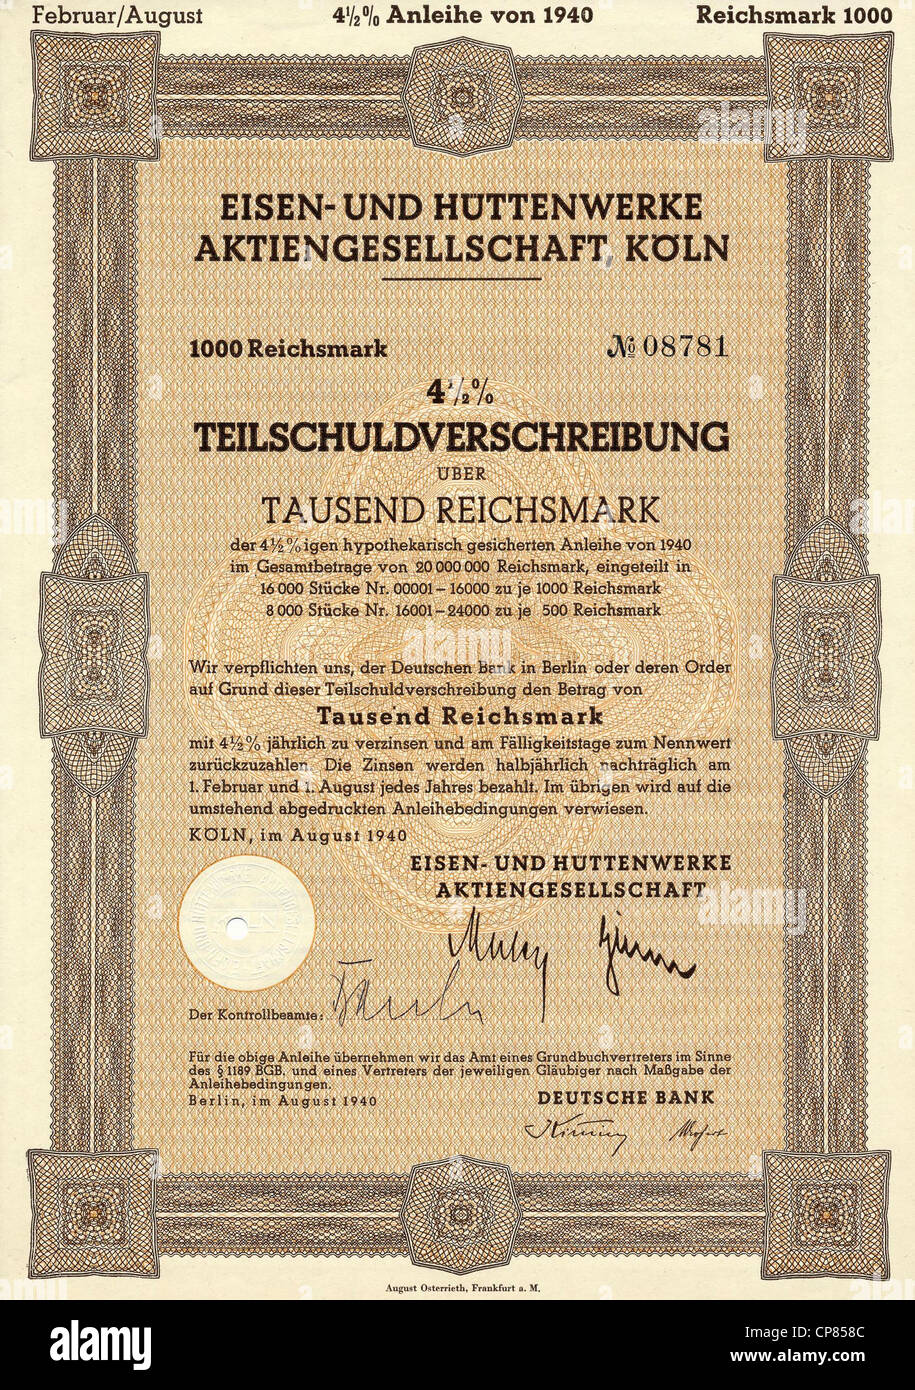 Historische Aktienzertifikat, Eisen-Und Huettenwerke Aktiengesellschaft, Köln, Stahlwerk, Obligation über 1000 Reichsmark, Stockfoto